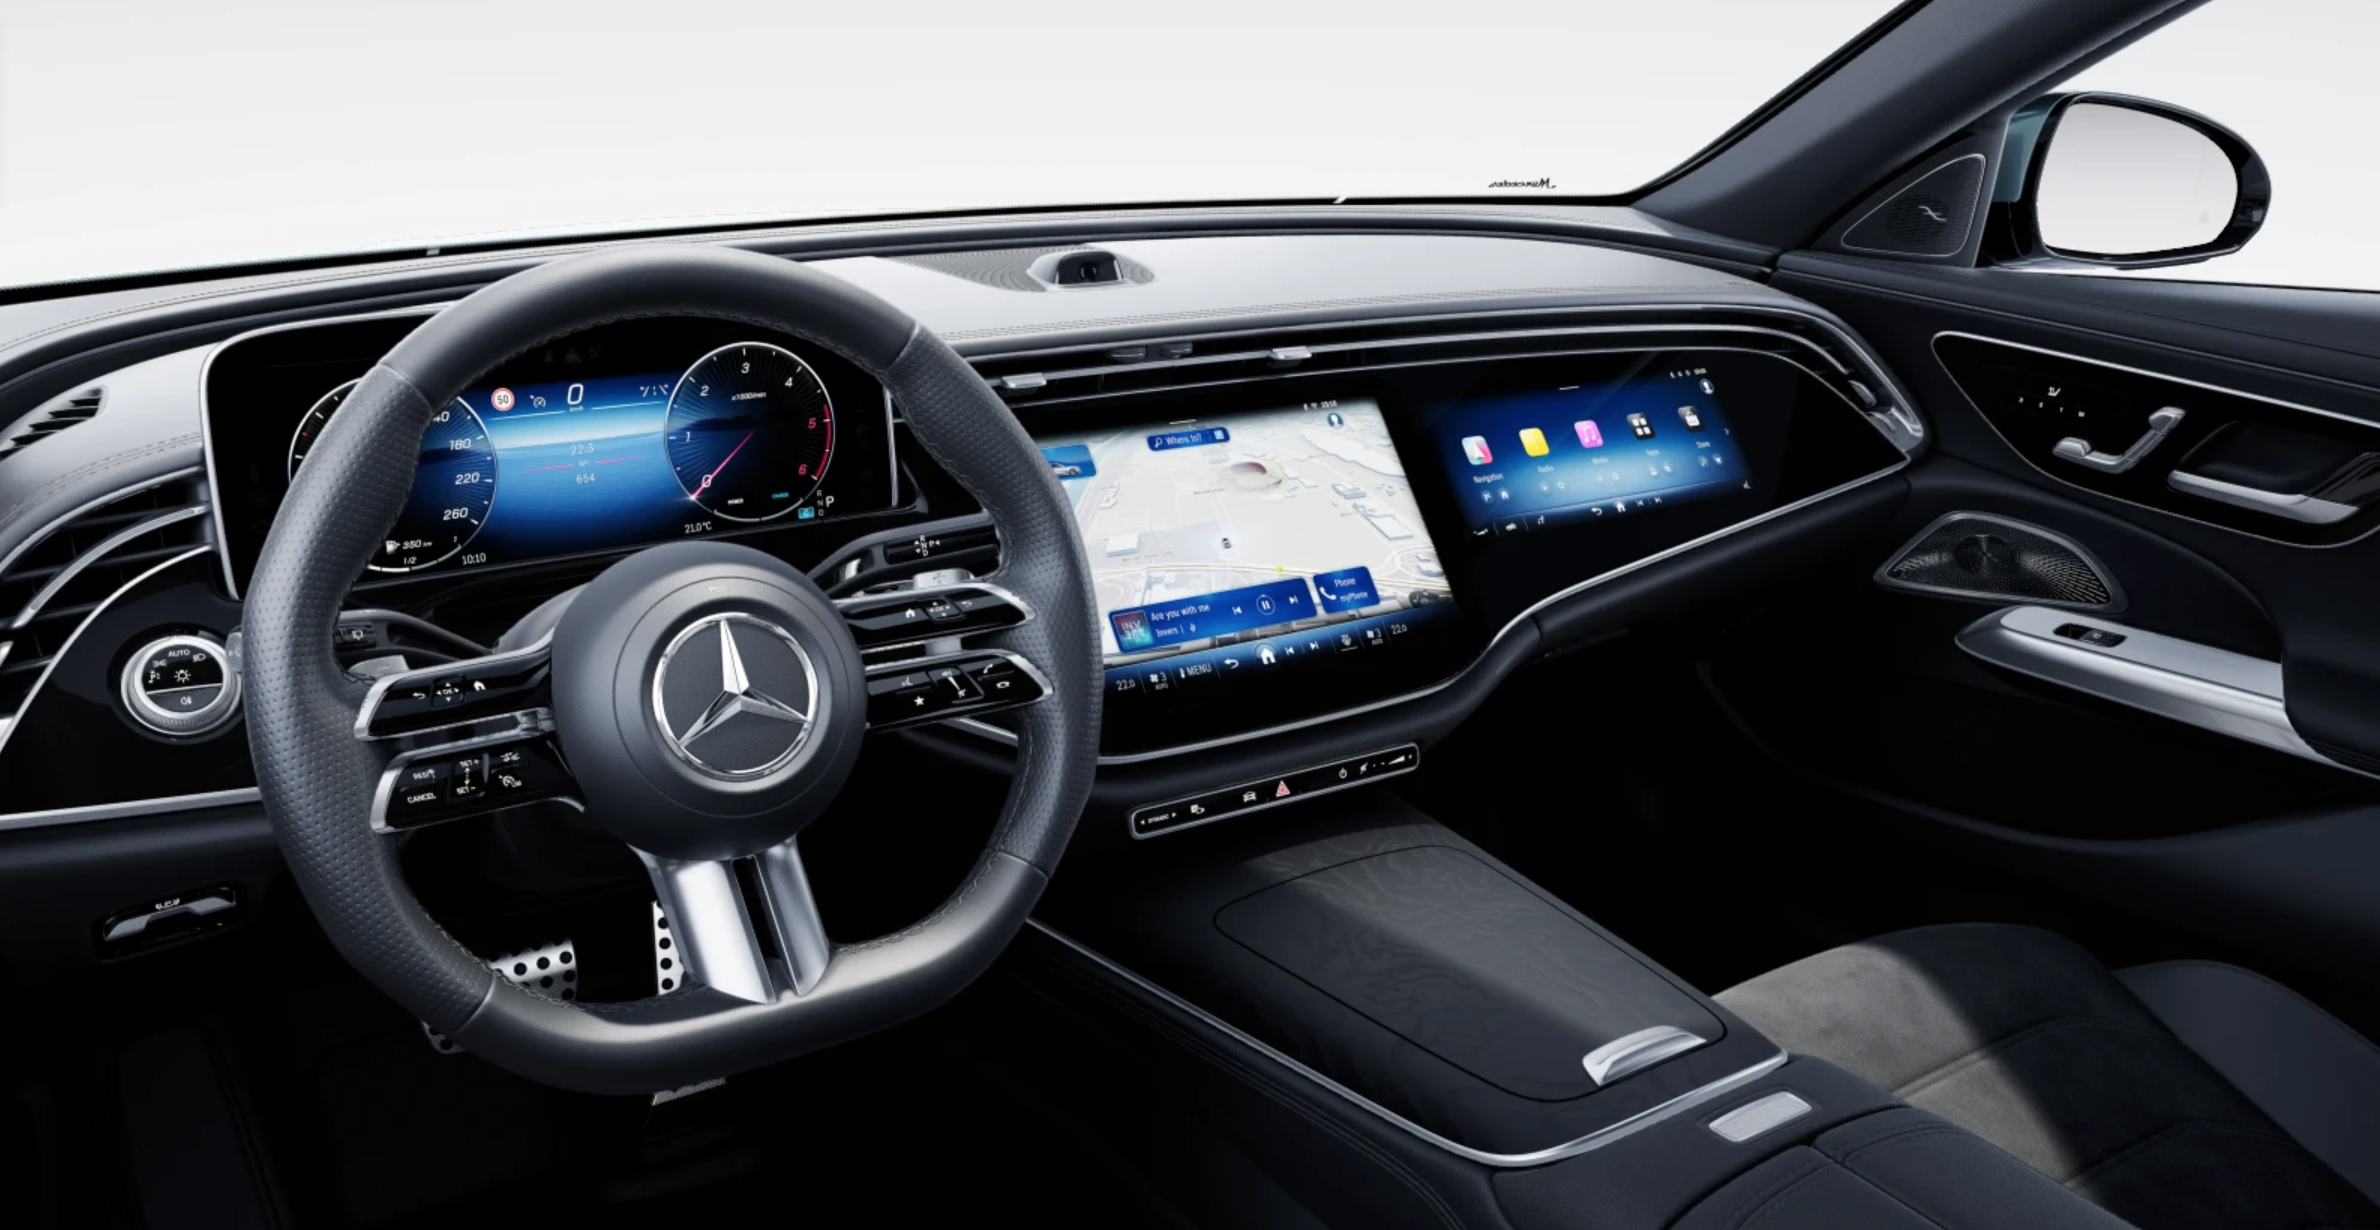 Mercedes E kombi 220d AMG | nový luxusní byznys kombík | nafta 220 koní | skvělá výbava | nové auto skladem | objednání online | super cena | auto eshop | AUTOiBUY.com